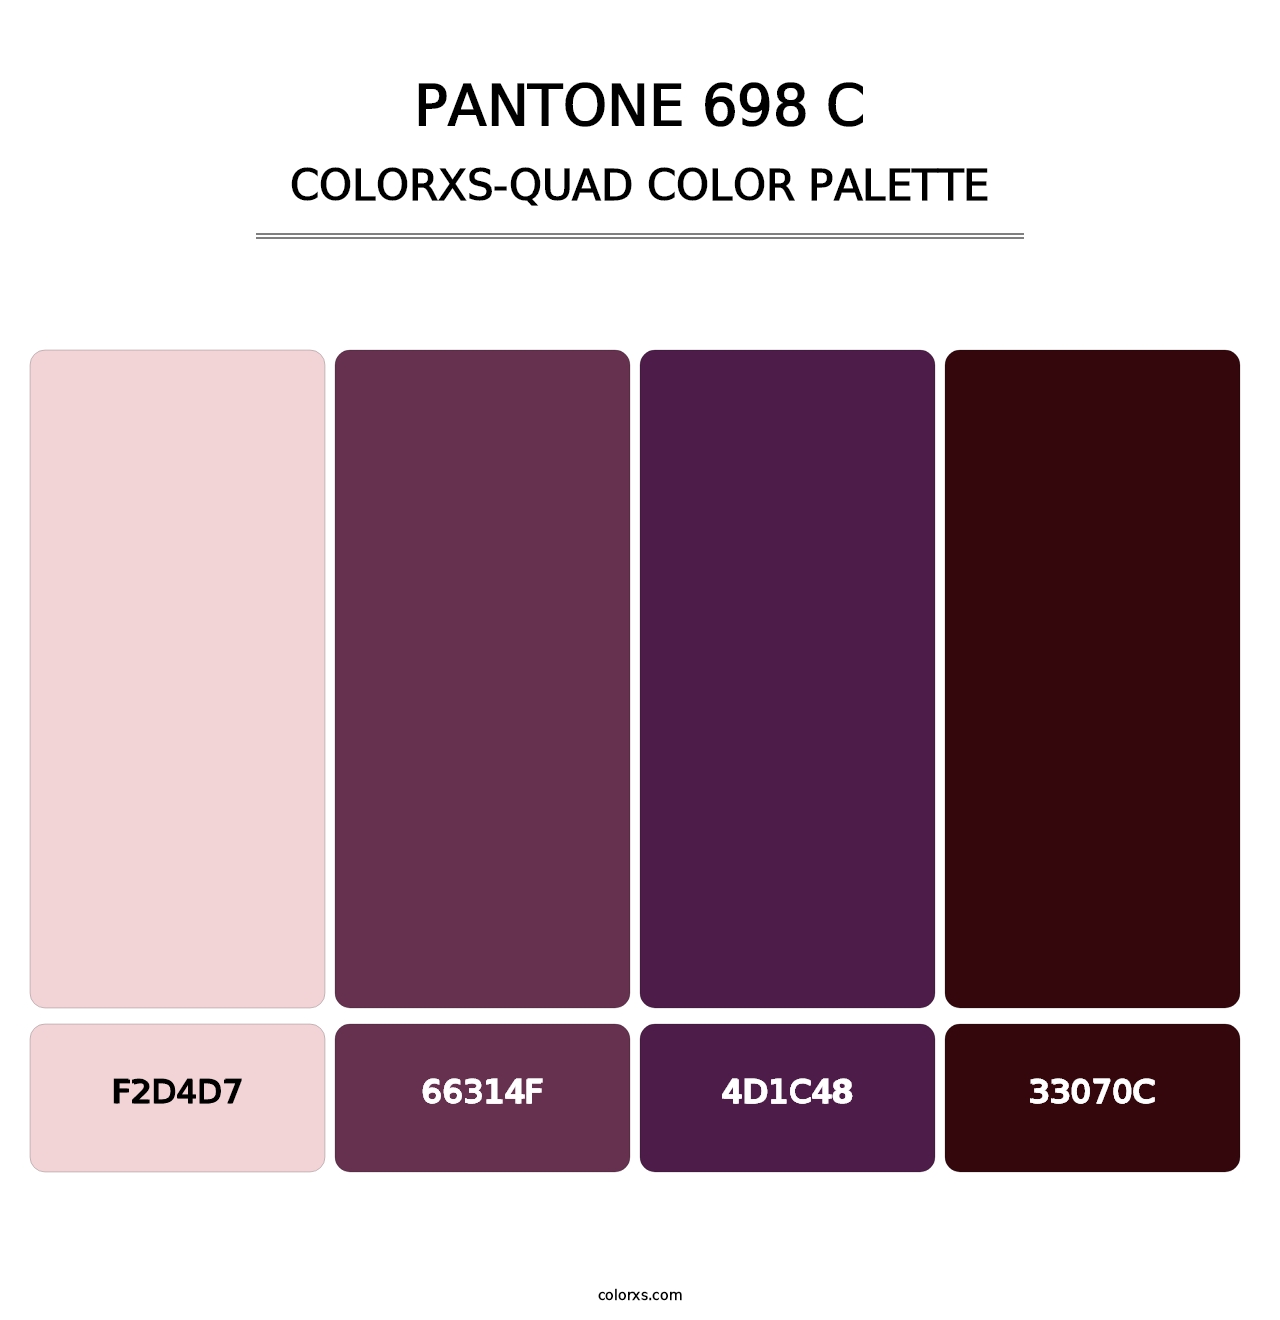 PANTONE 698 C - Colorxs Quad Palette